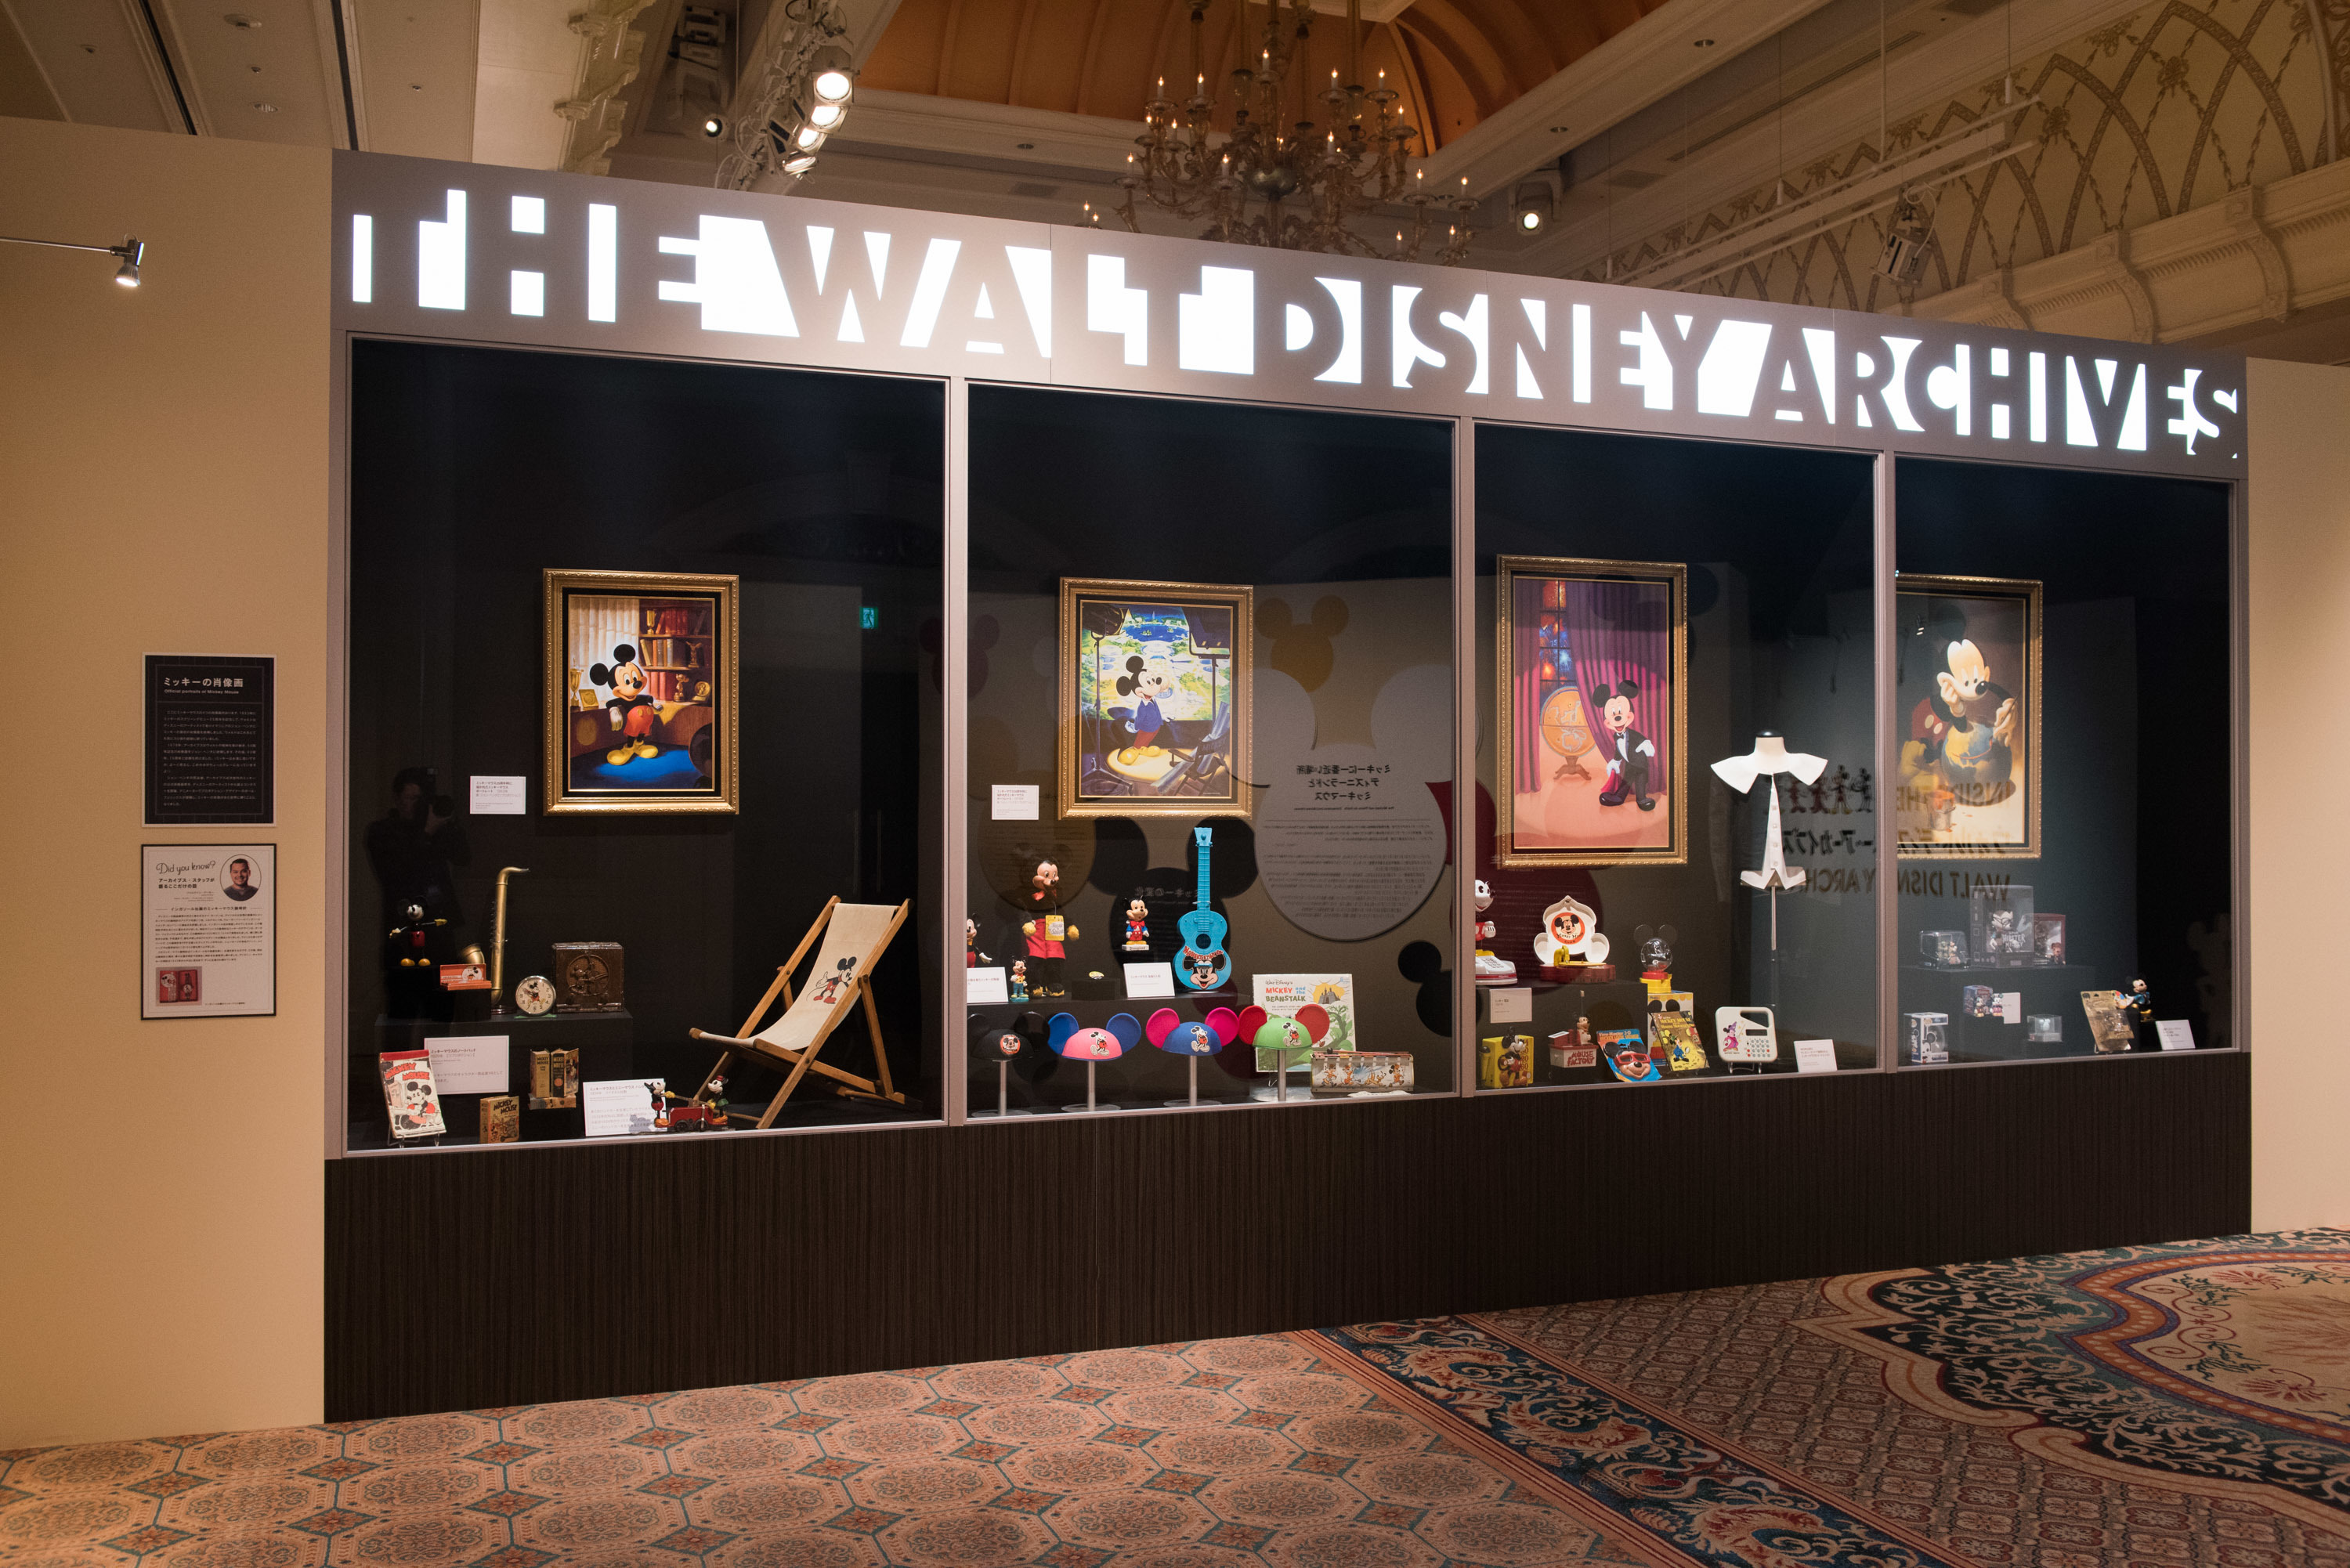 ウォルト・ディズニー・アーカイブスのロビーにある 巨大なショーケースを再現